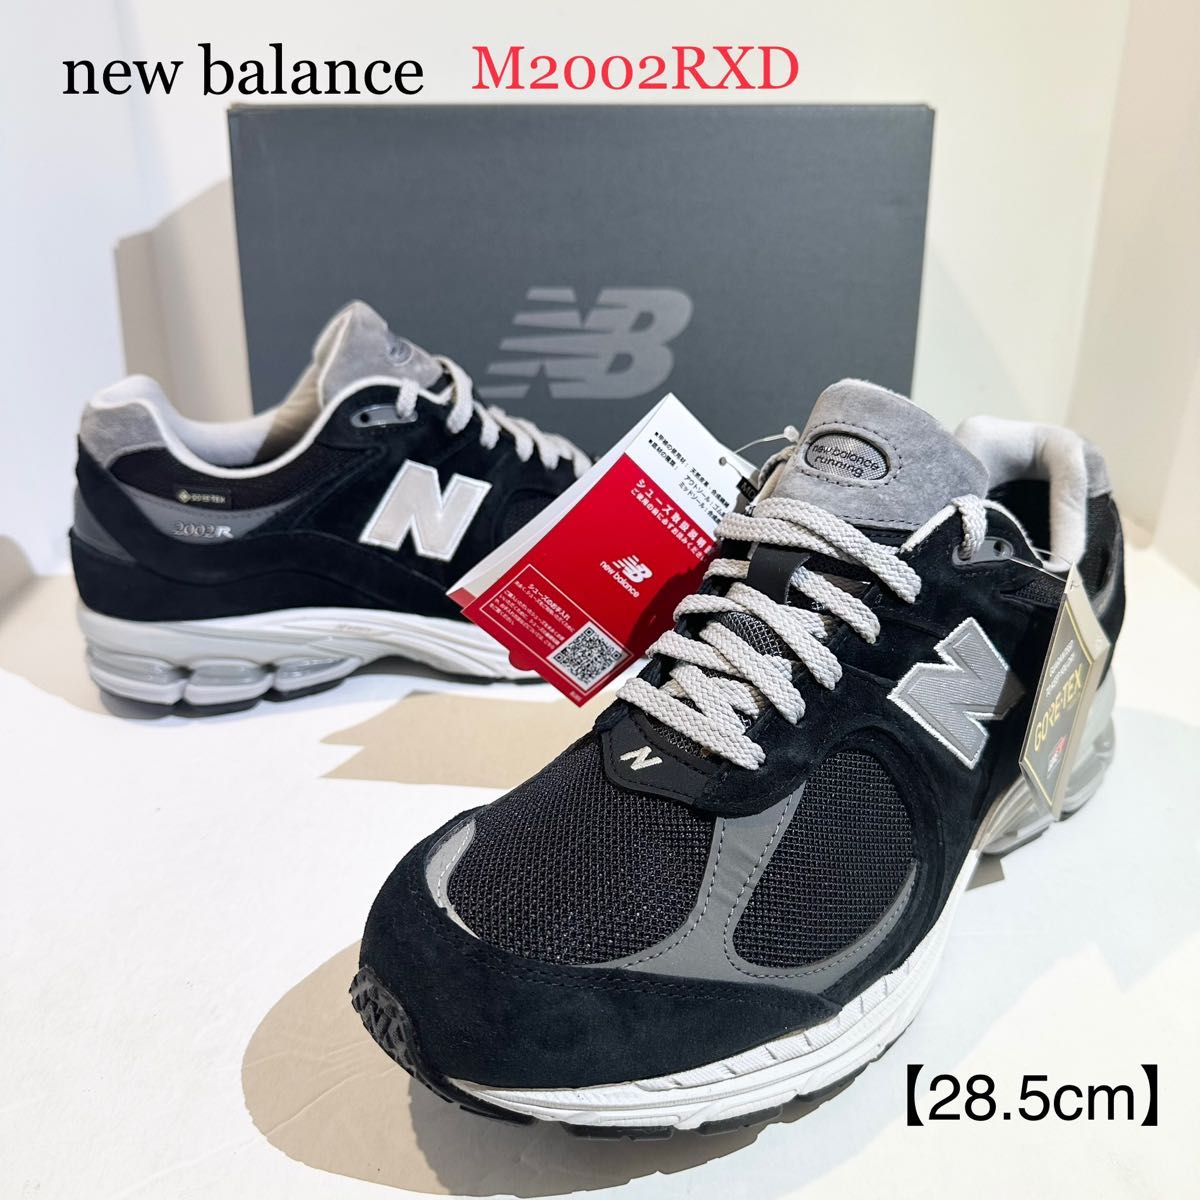 new balance/ニューバランス M2002RXD GORE-TEX/ゴアテックス ブラック